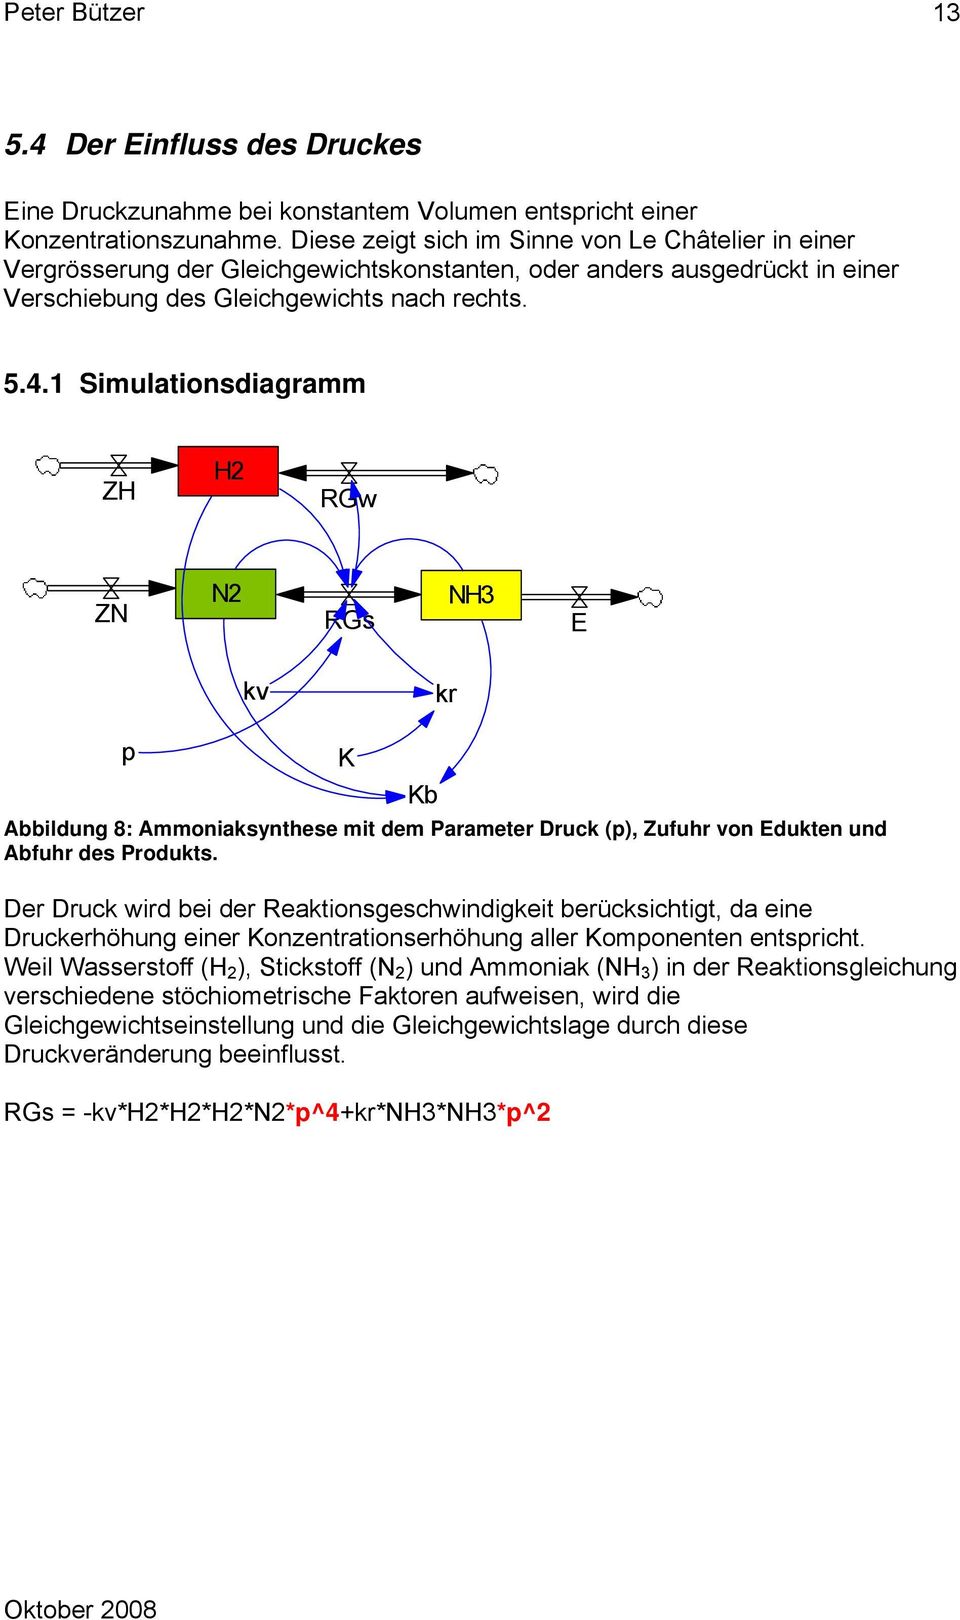 1 Simulationsdiagramm ZH H2 RGw ZN N2 RGs NH3 E kv kr p K Kb Abbildung 8: Ammoniaksynthese mit dem Parameter Druck (p), Zufuhr von Edukten und Abfuhr des Produkts.